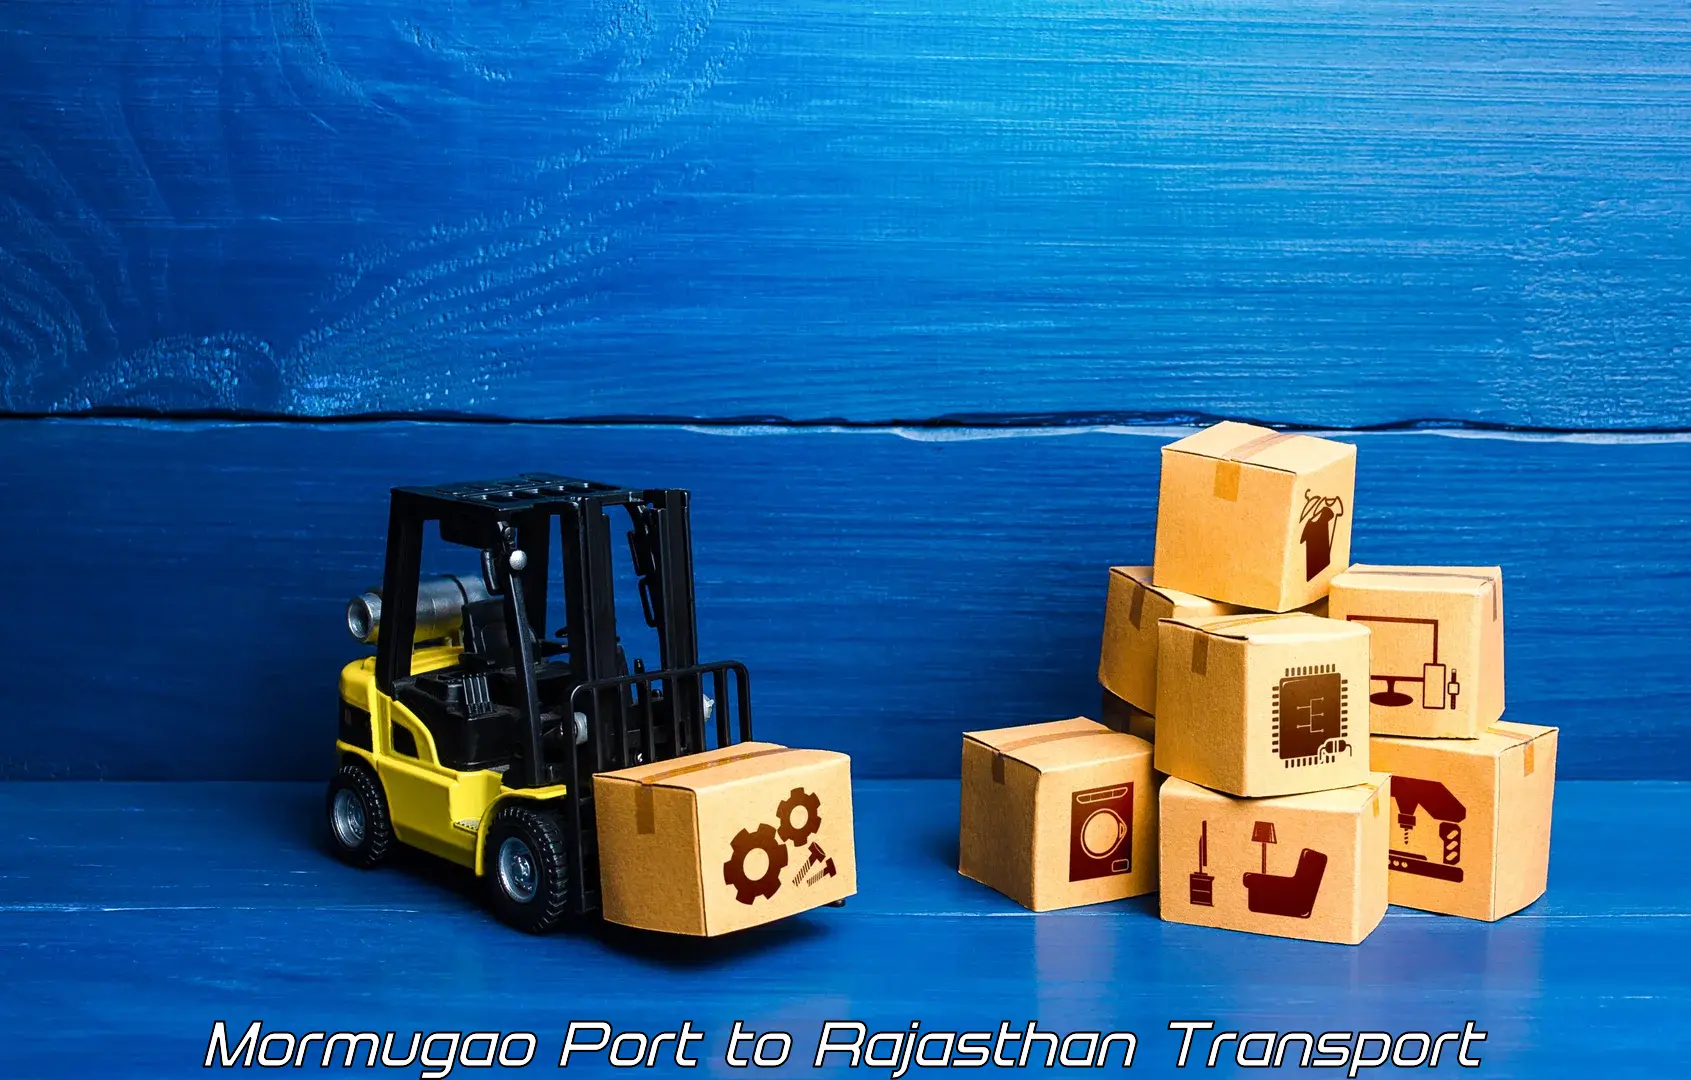 Container transportation services Mormugao Port to Nagaur